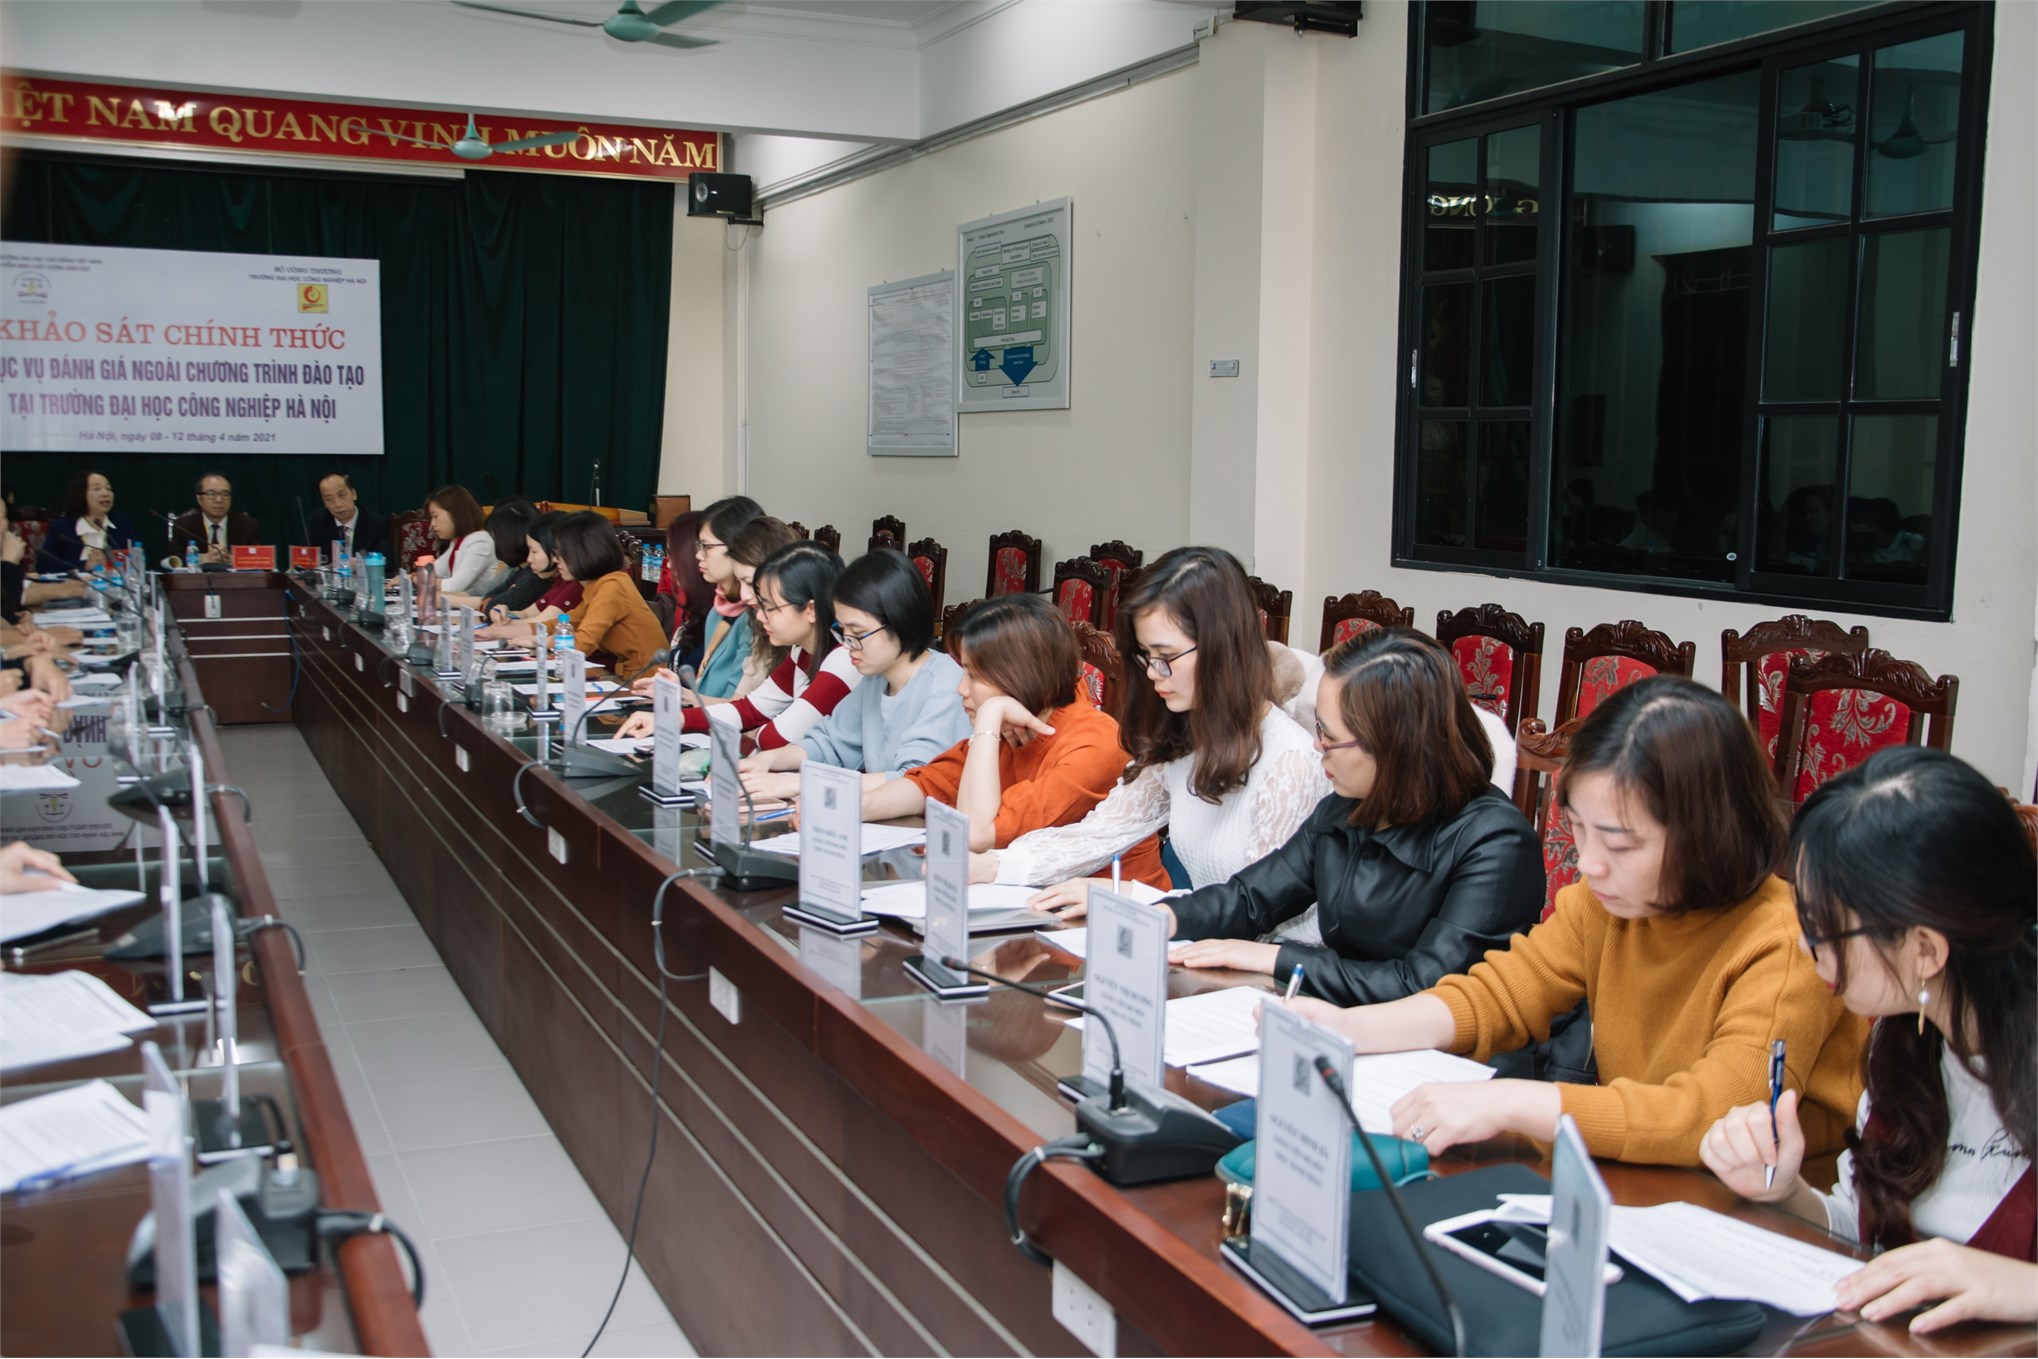 Đoàn chuyên gia đánh giá ngoài chương trình đào tạo đến khảo sát tại Khoa Ngoại ngữ - Trường Đại học Công nghiệp Hà Nội